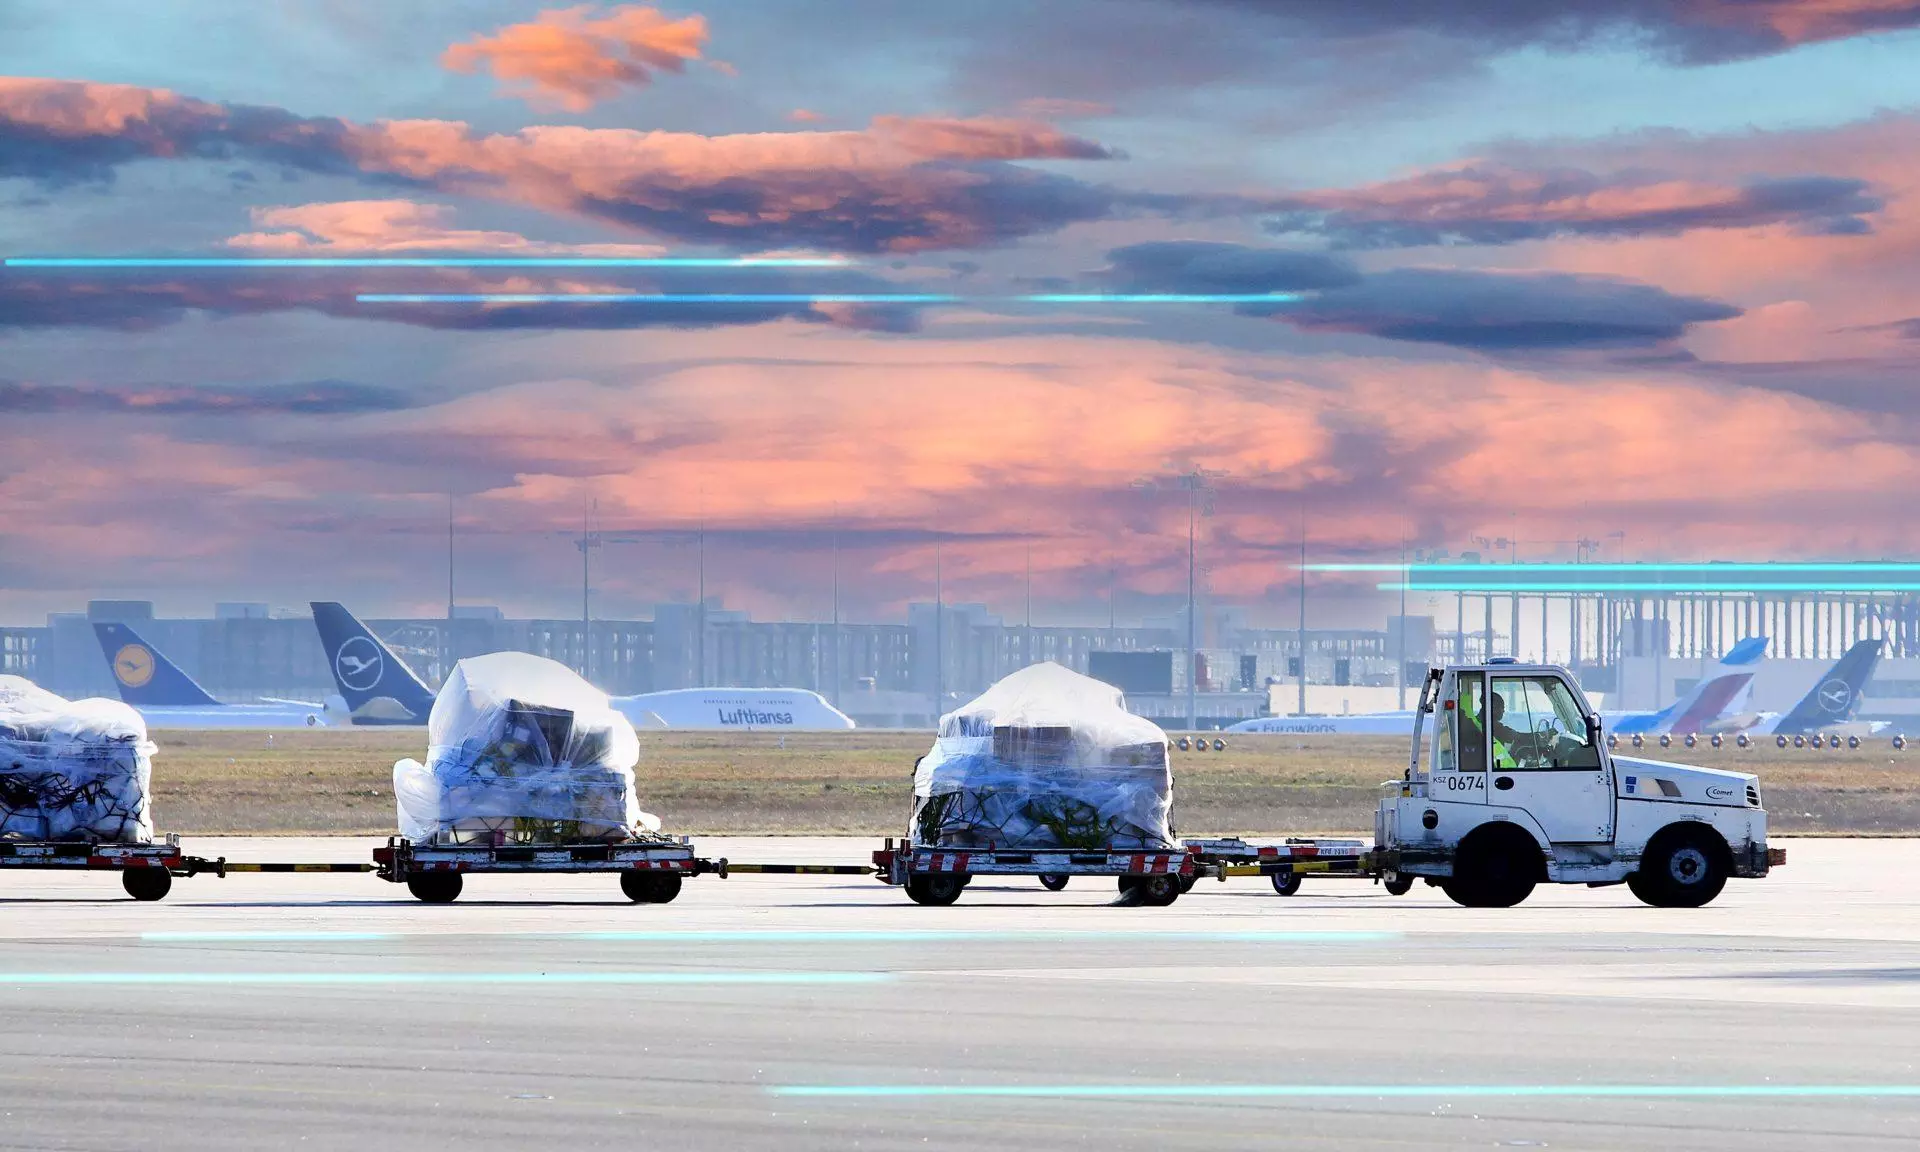 DAKOSY, Fraport form JV “allivate” for air cargo digitalisation